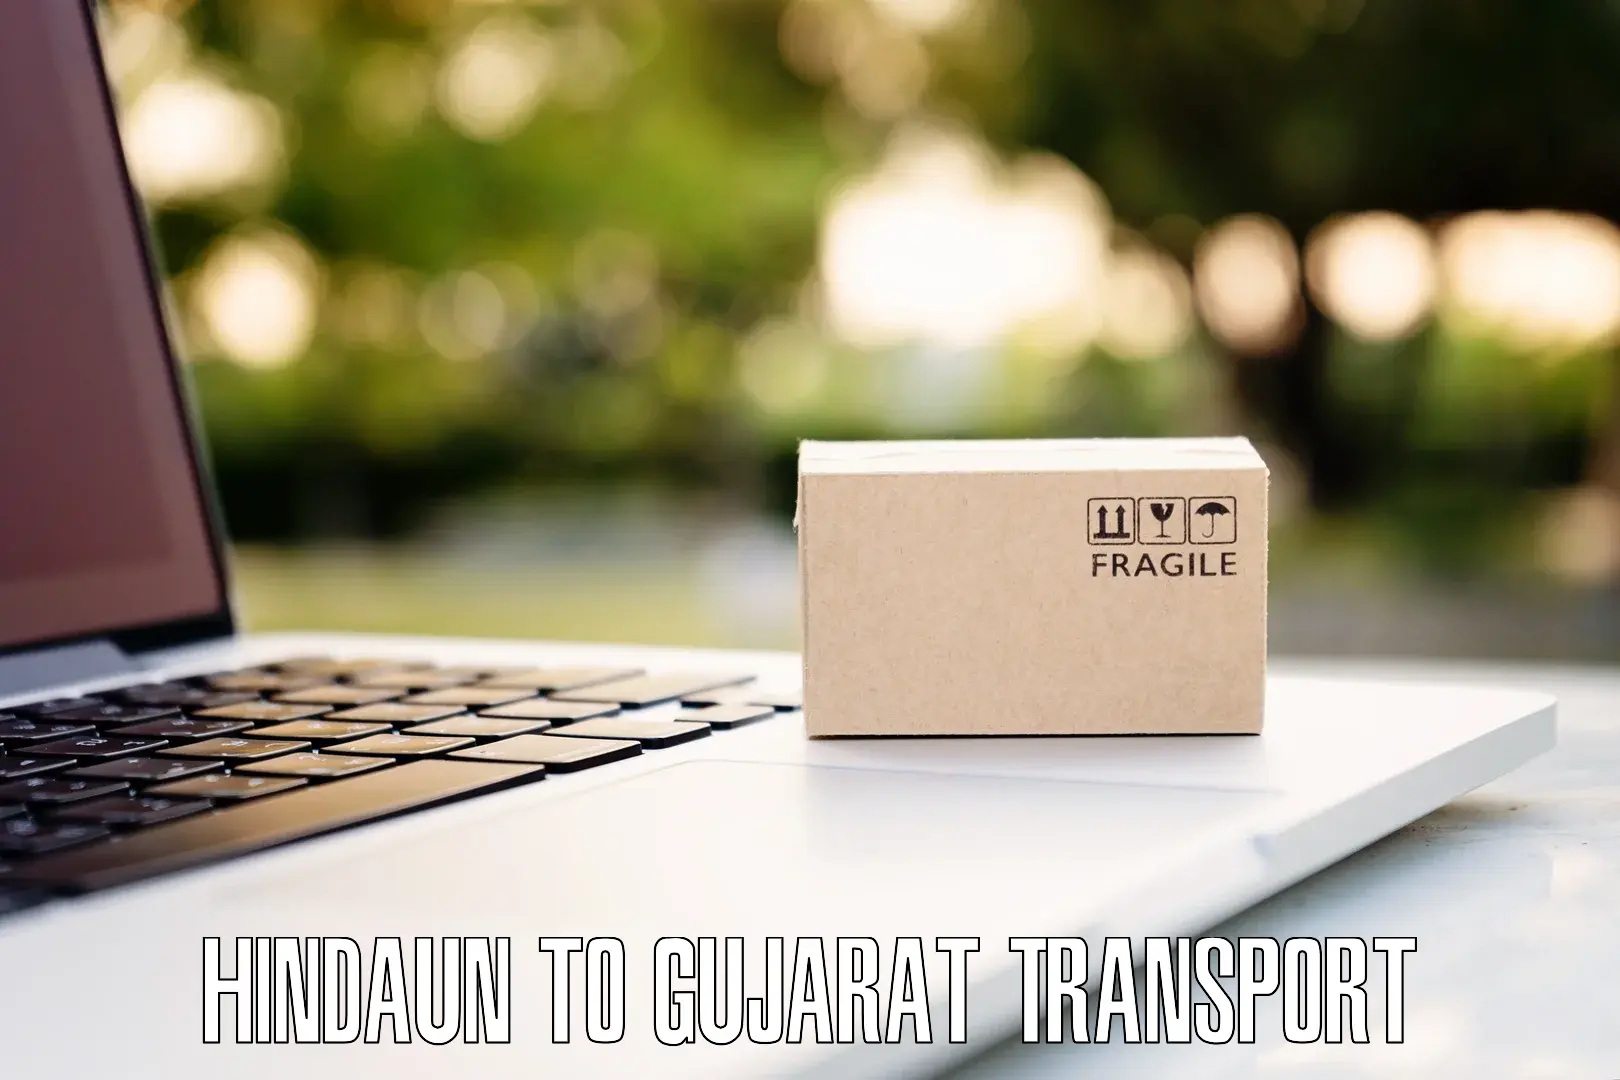 Express transport services Hindaun to Patan Gujarat